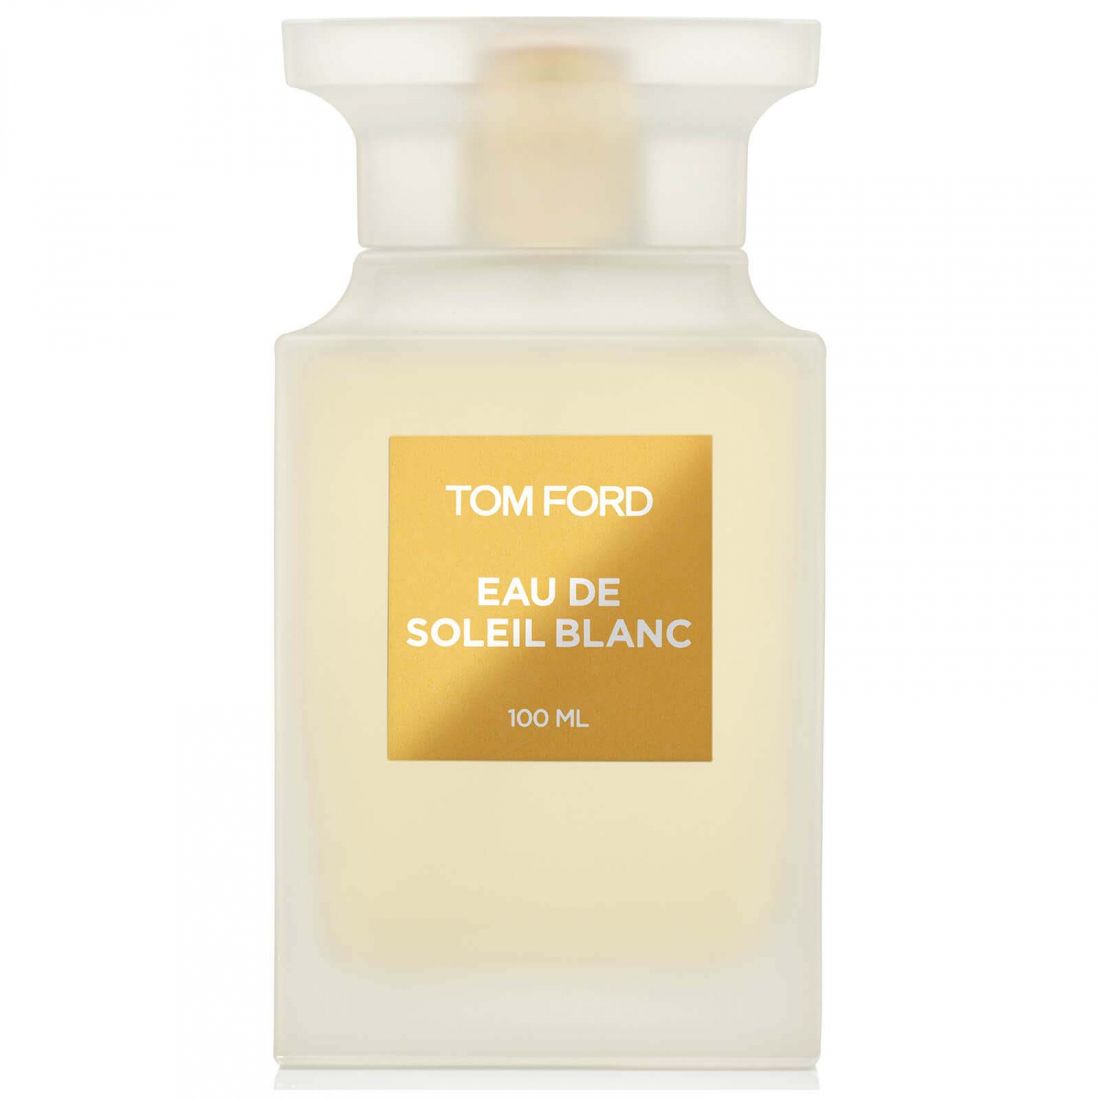 Tom Ford - Eau de toilette 'Eau De Soleil Blanc' - 100 ml